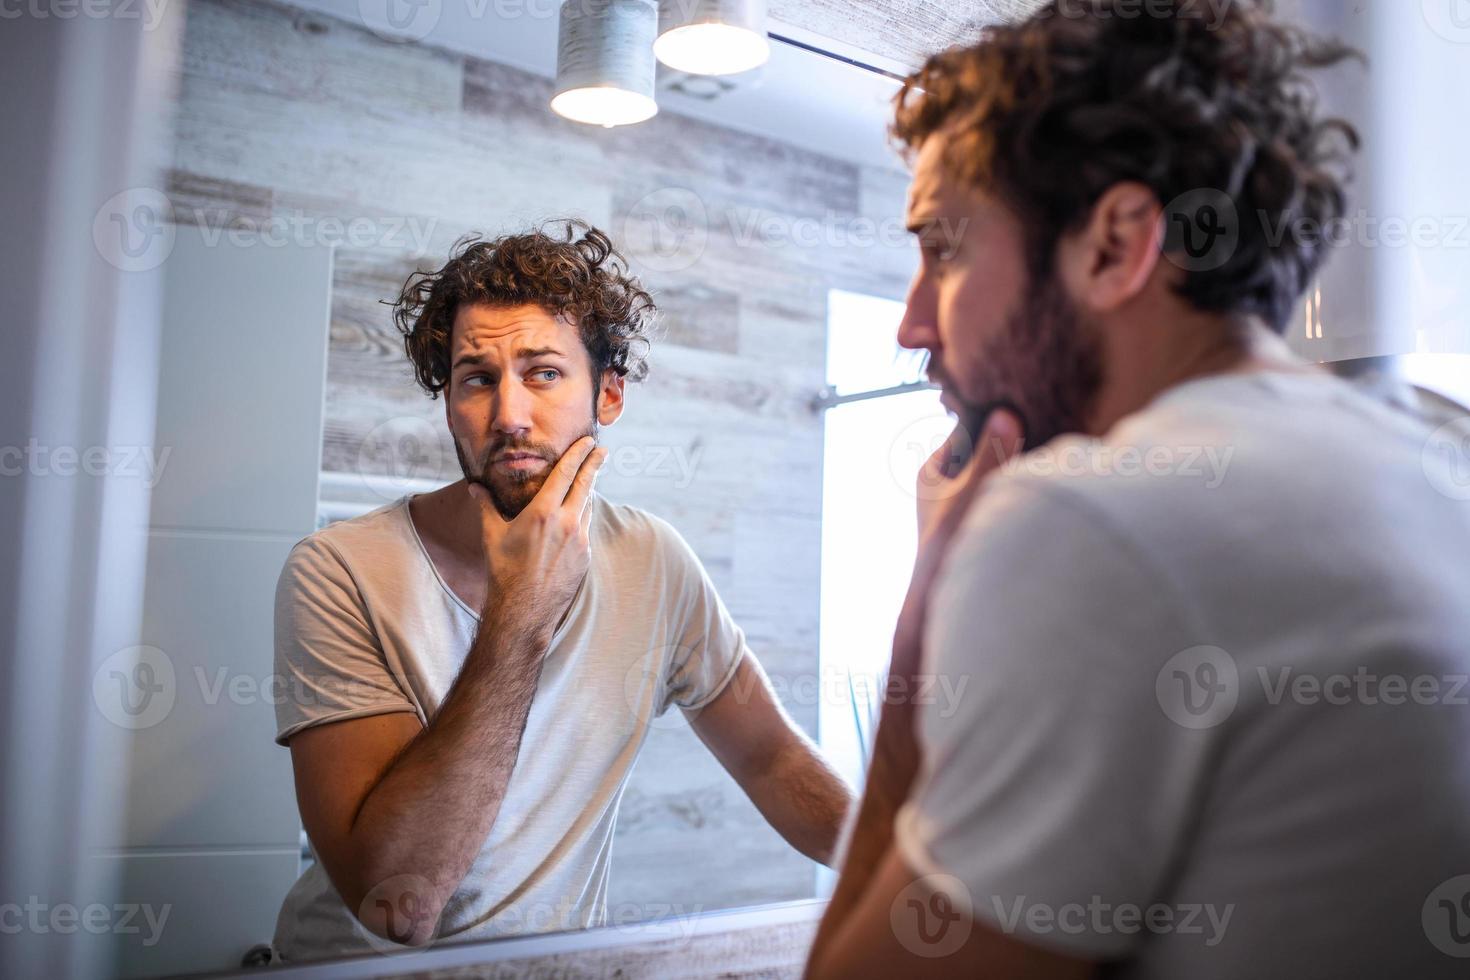 mattina igiene, bello uomo nel il bagno guardare nel specchio. riflessione di bello uomo con barba guardare a specchio e toccante viso nel bagno governare foto